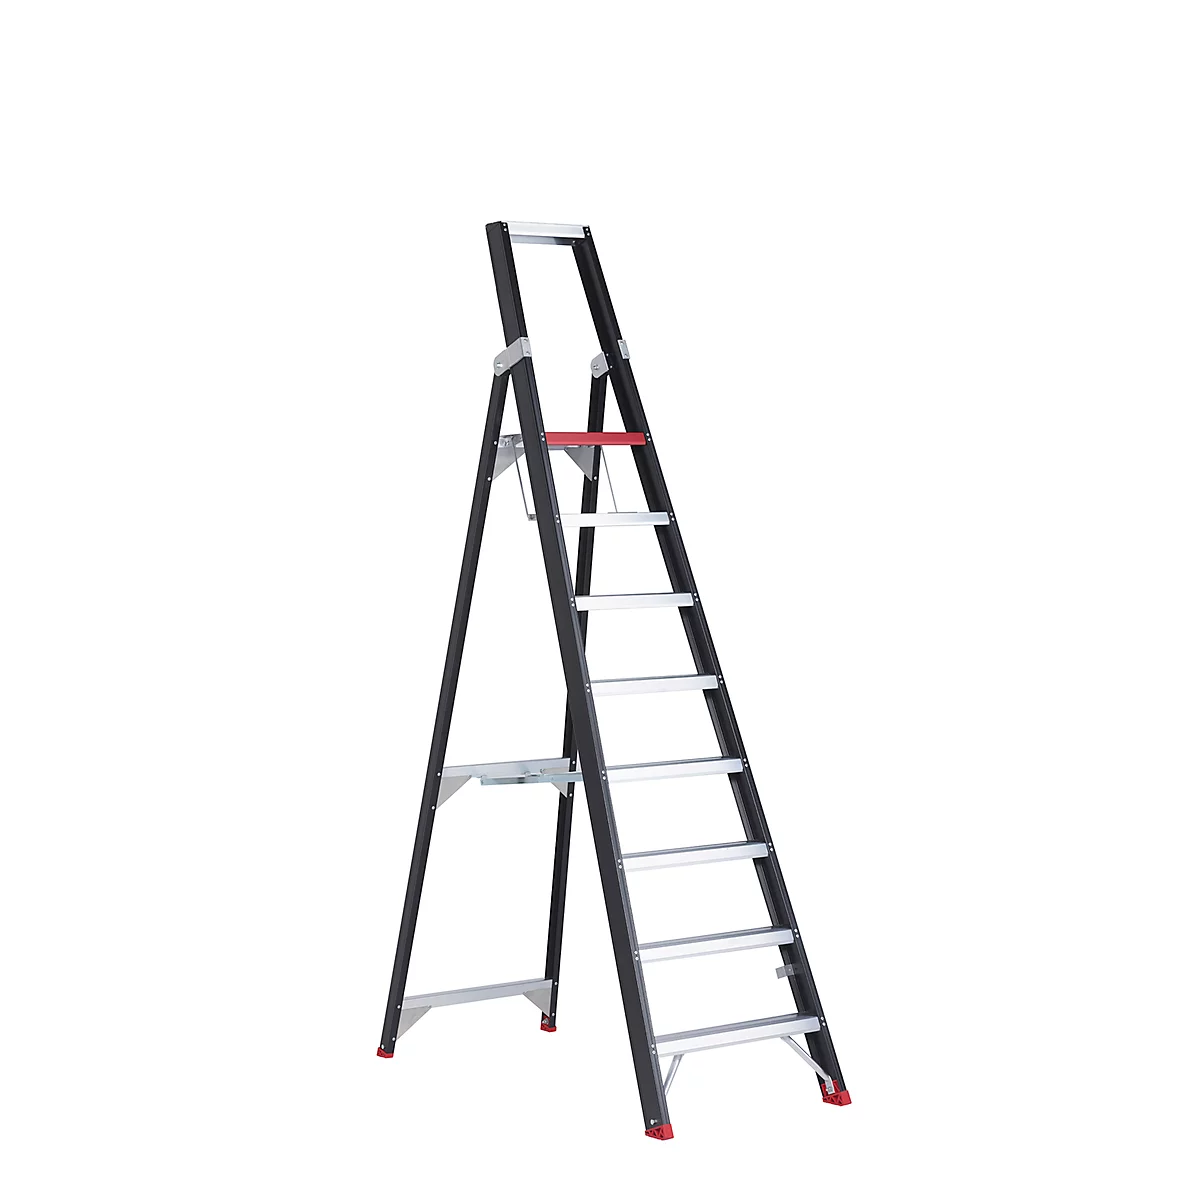 Escalera de tijera Professional Topline, unilateral, aluminio, 8 escalones, negro